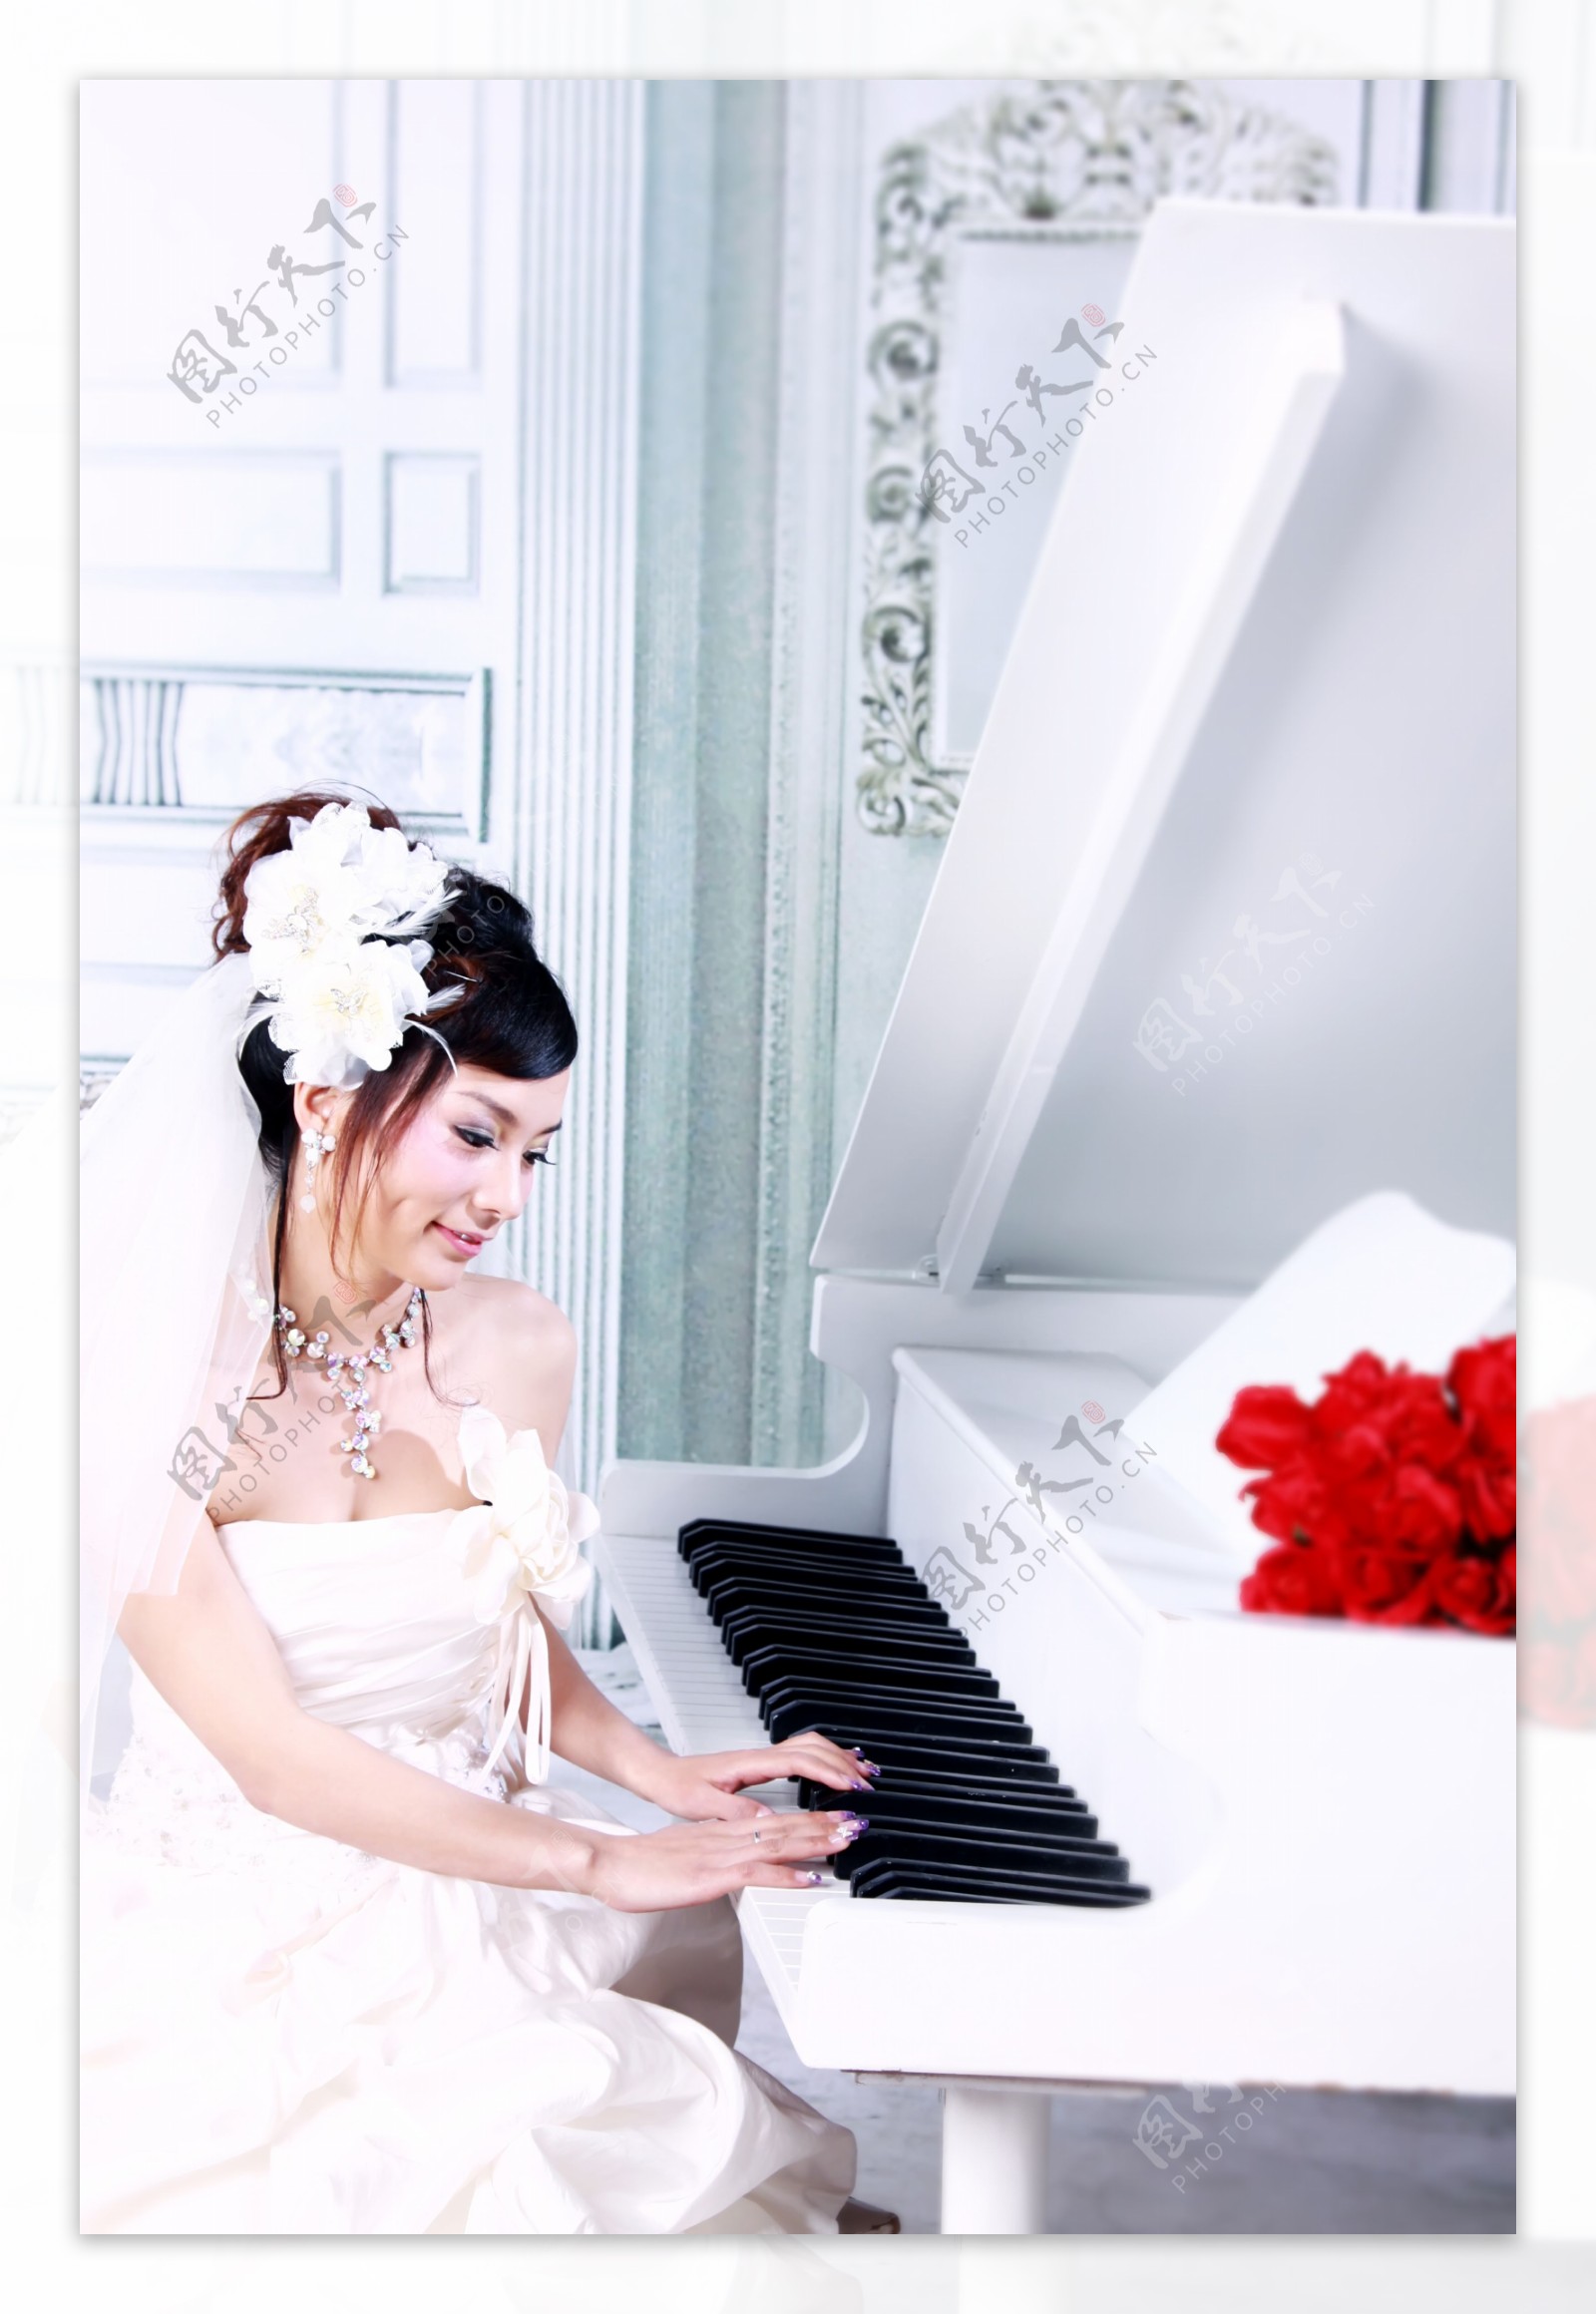 婚纱钢琴美女新娘造型摄影店宣传海报图片